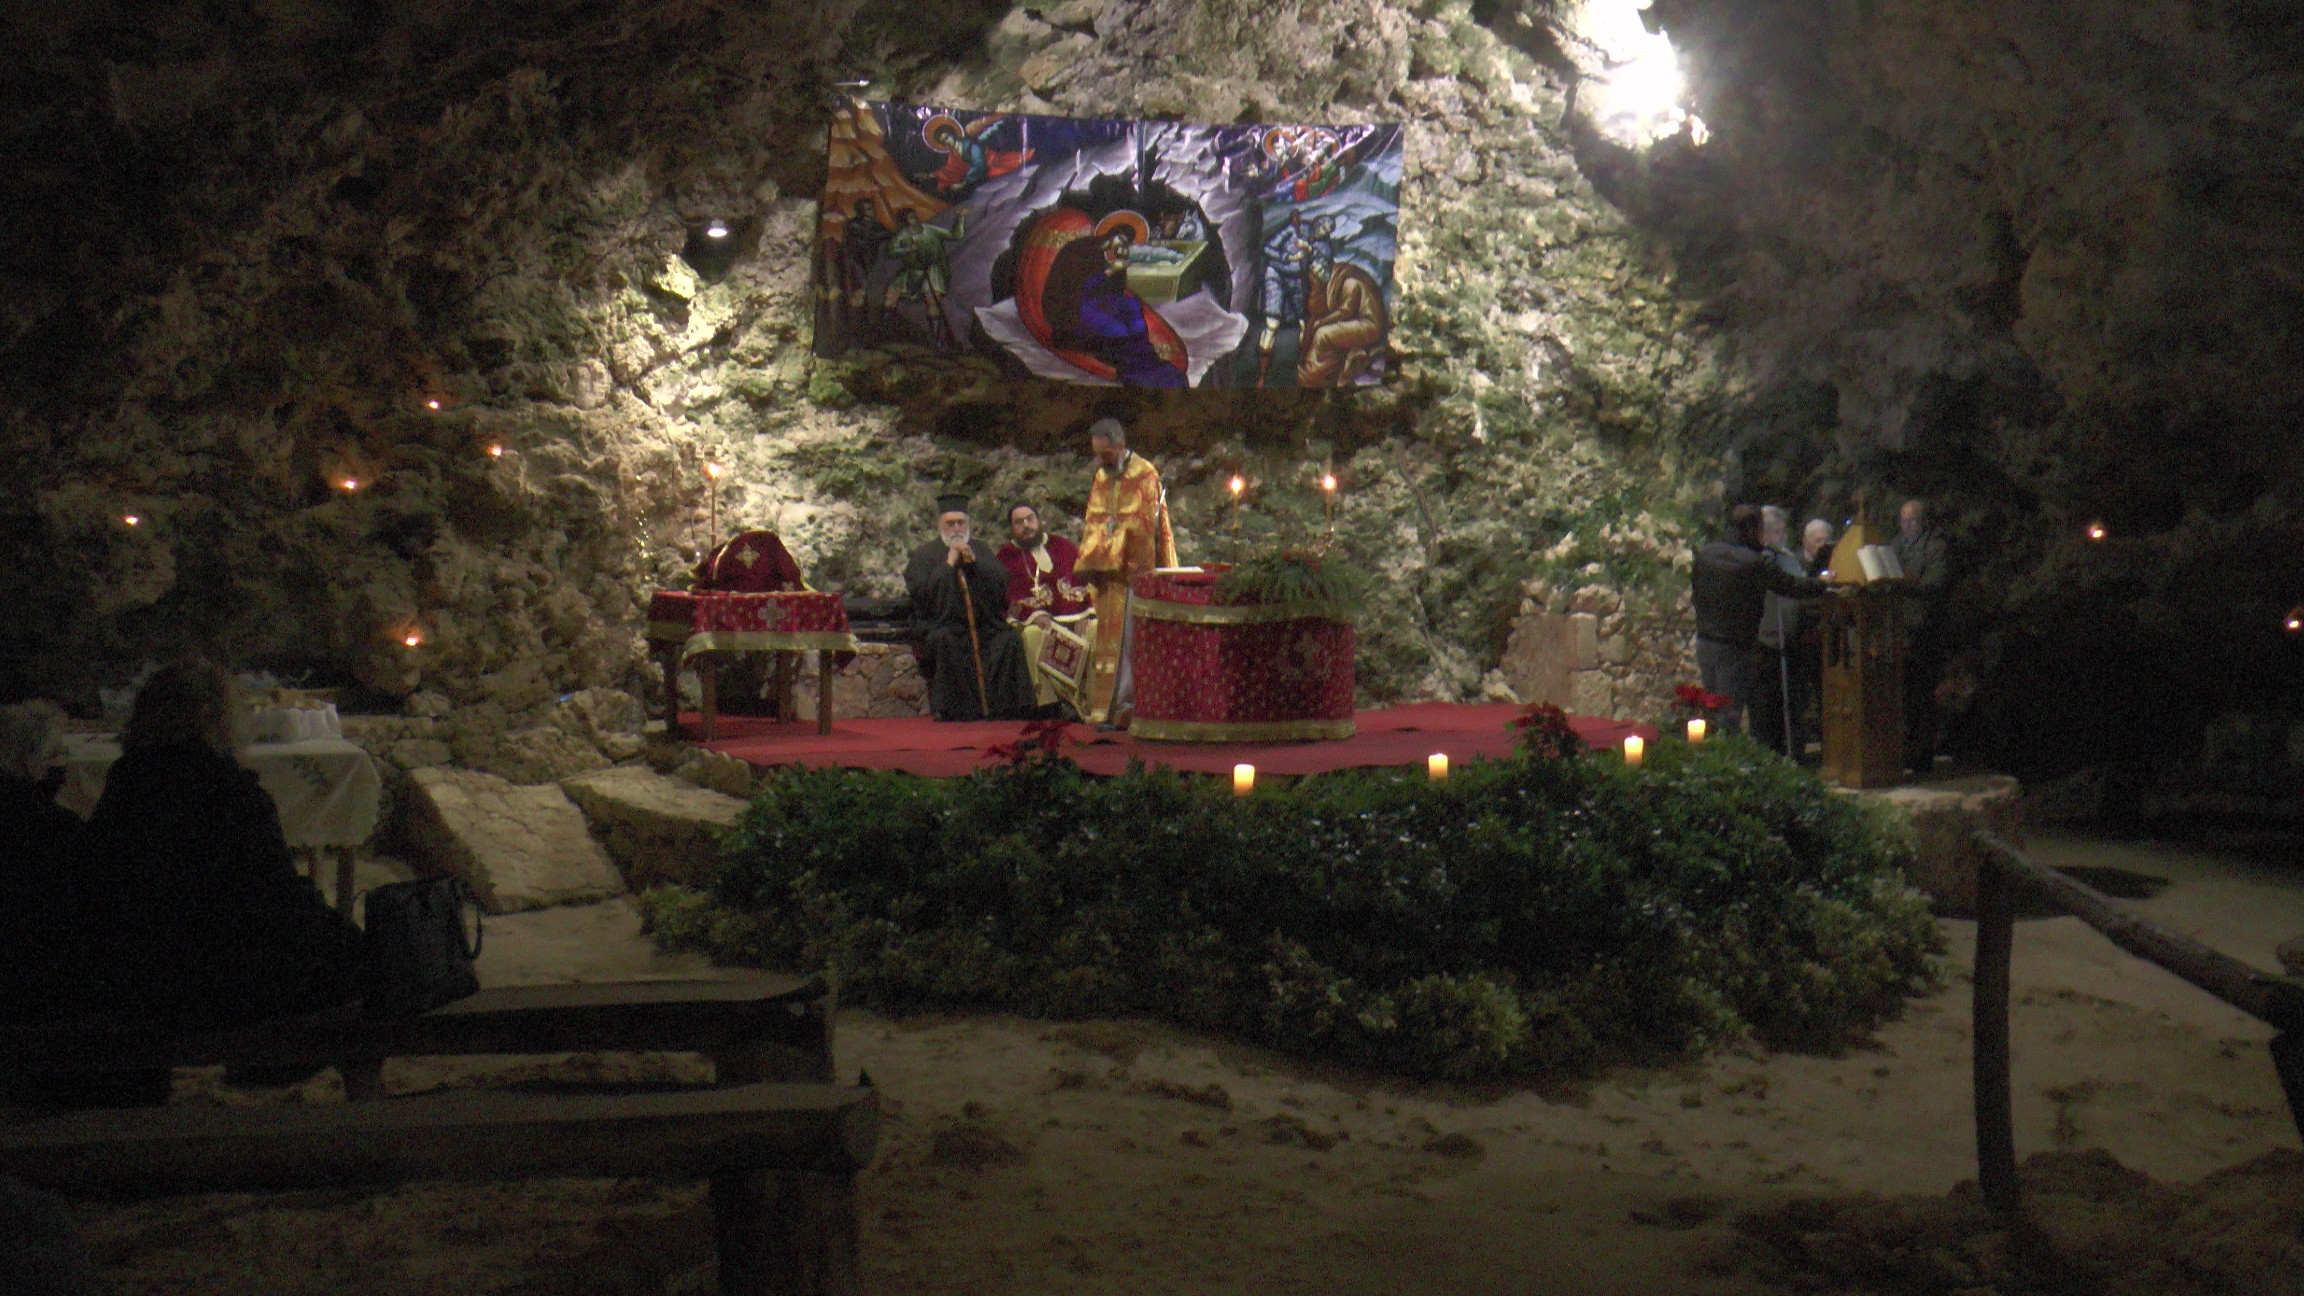 Σε κλίμα κατάνυξης η λειτουργία στη σπηλιά Μαραθοκεφάλας στο Κολυμπάρι (φωτο)